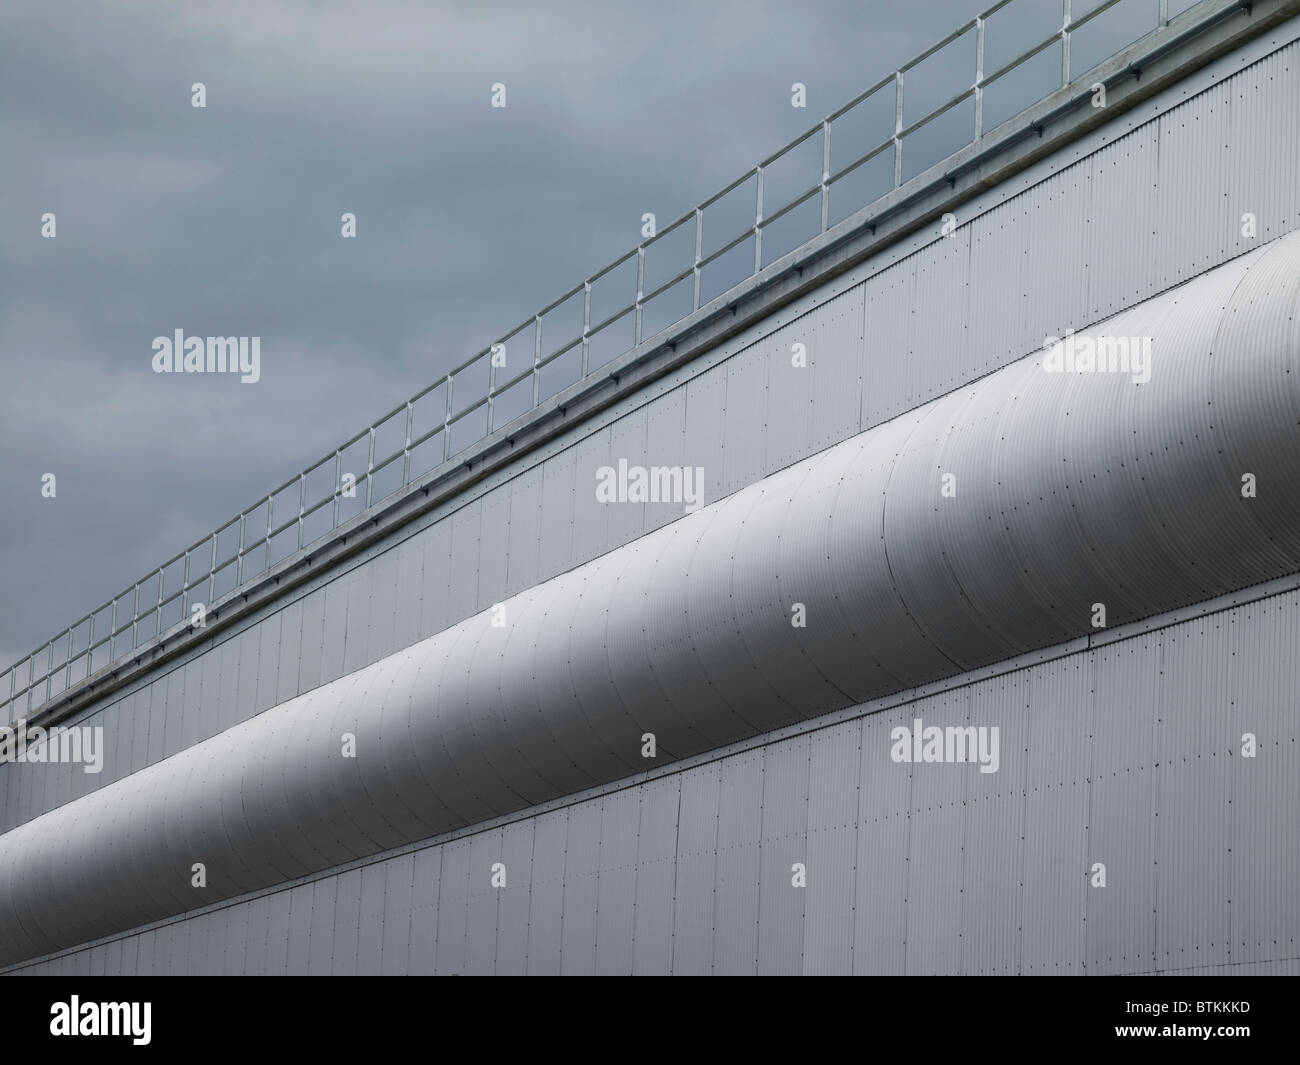 Industrial de pared de metal corrugado con barandilla Foto de stock